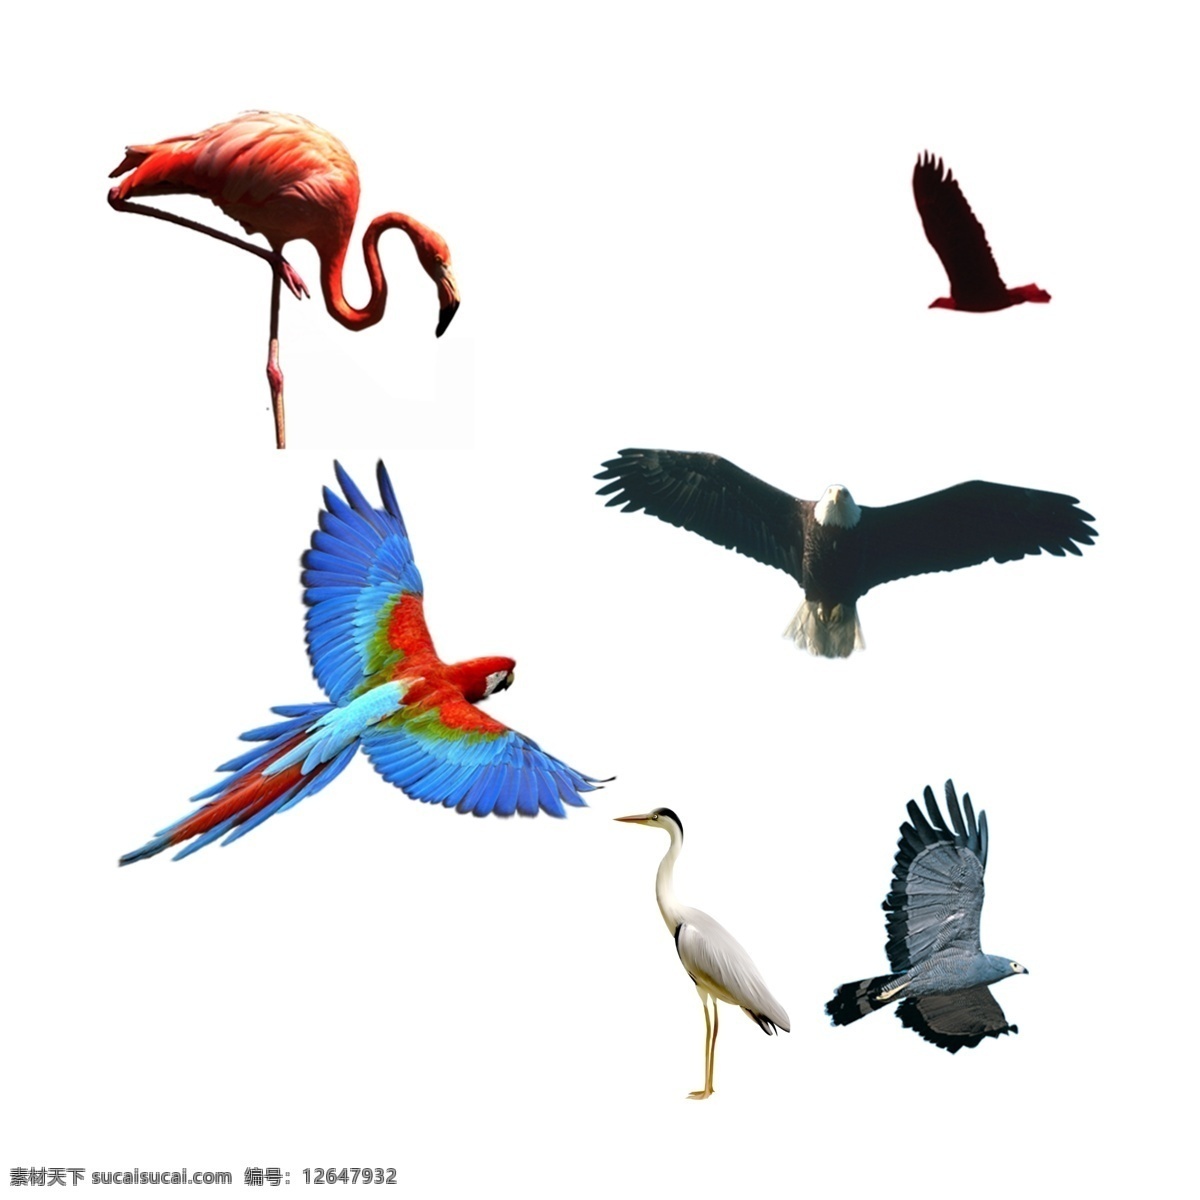 各种 鸟类 素材图片 鹦鹉 丹顶鹤 老鹰 火烈鸟 飞翔的鸟类 生物世界